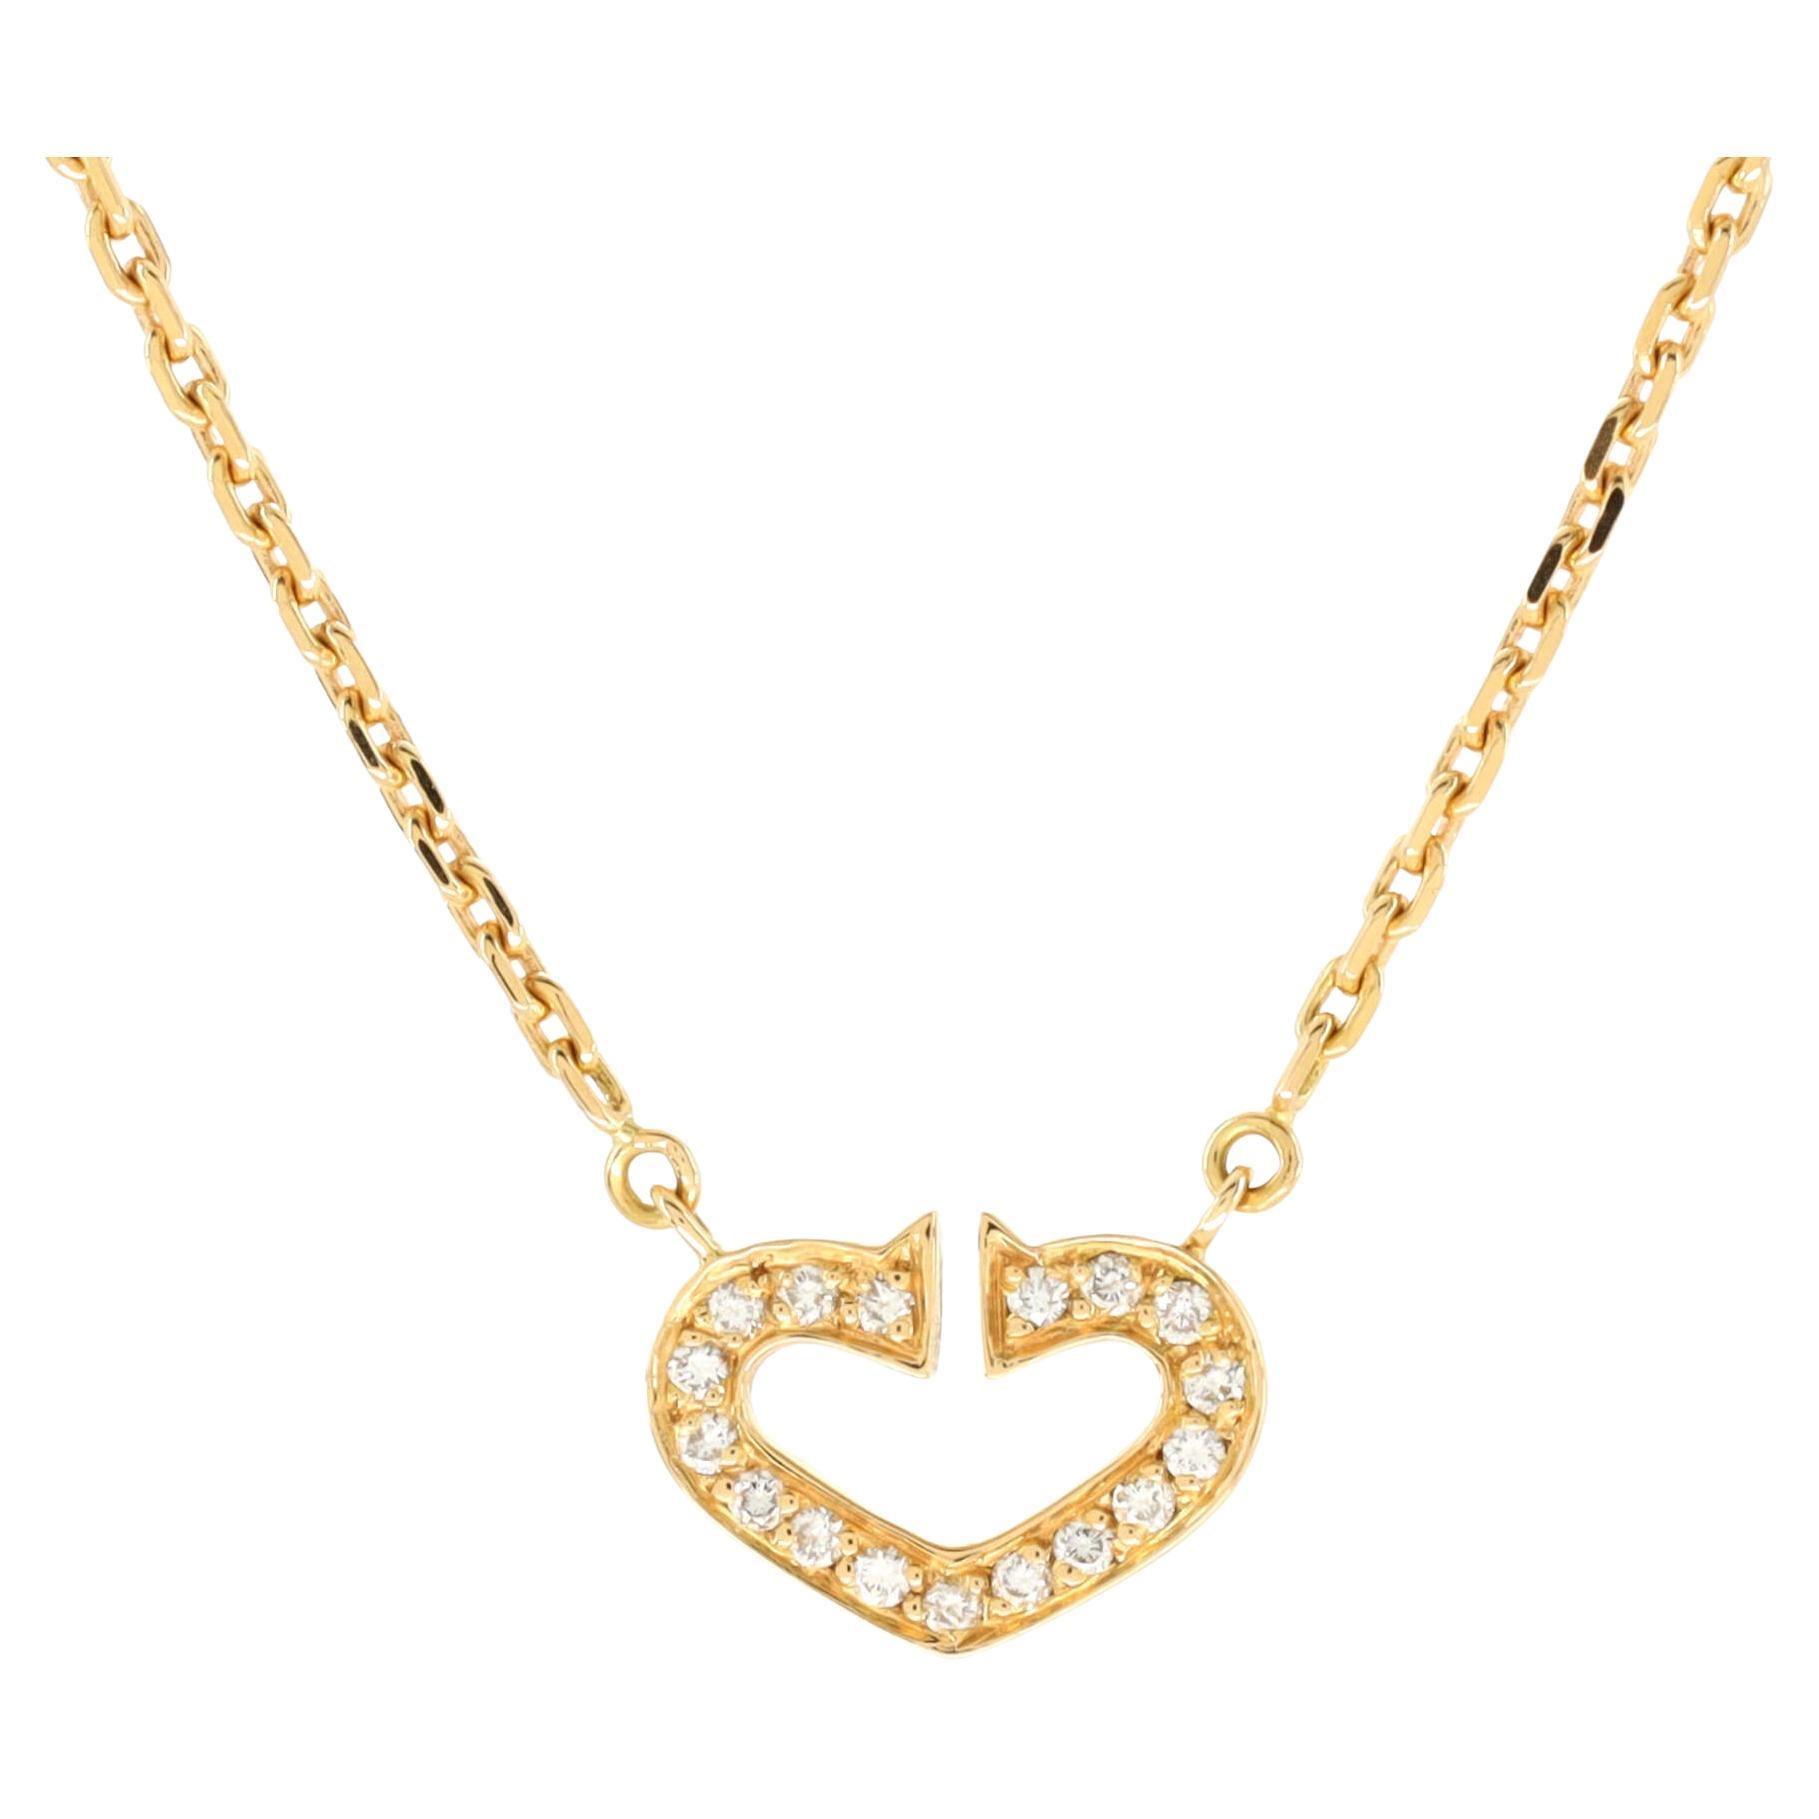 Cartier C Heart De Cartier Pendant Necklace 18k Yellow Gold with Pave Diamonds